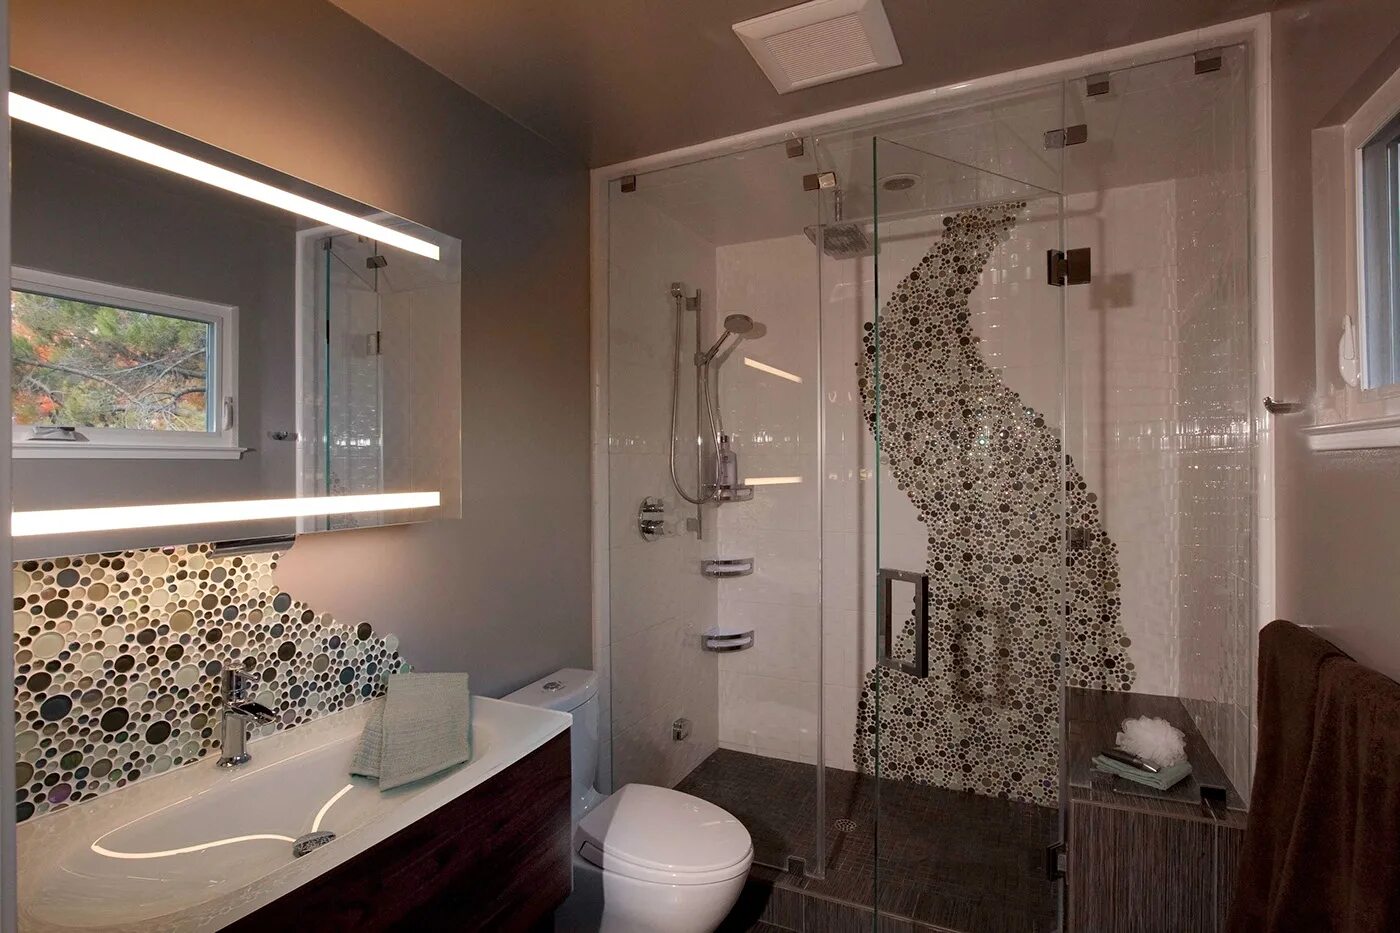 Ванна мозаикой фото. Ванная с зеркальной мозаикой. Зеракальная мозайка в ванной. Зеркальная мозаика в ванной комнате. Мозаика в интерьере ванной комнаты.